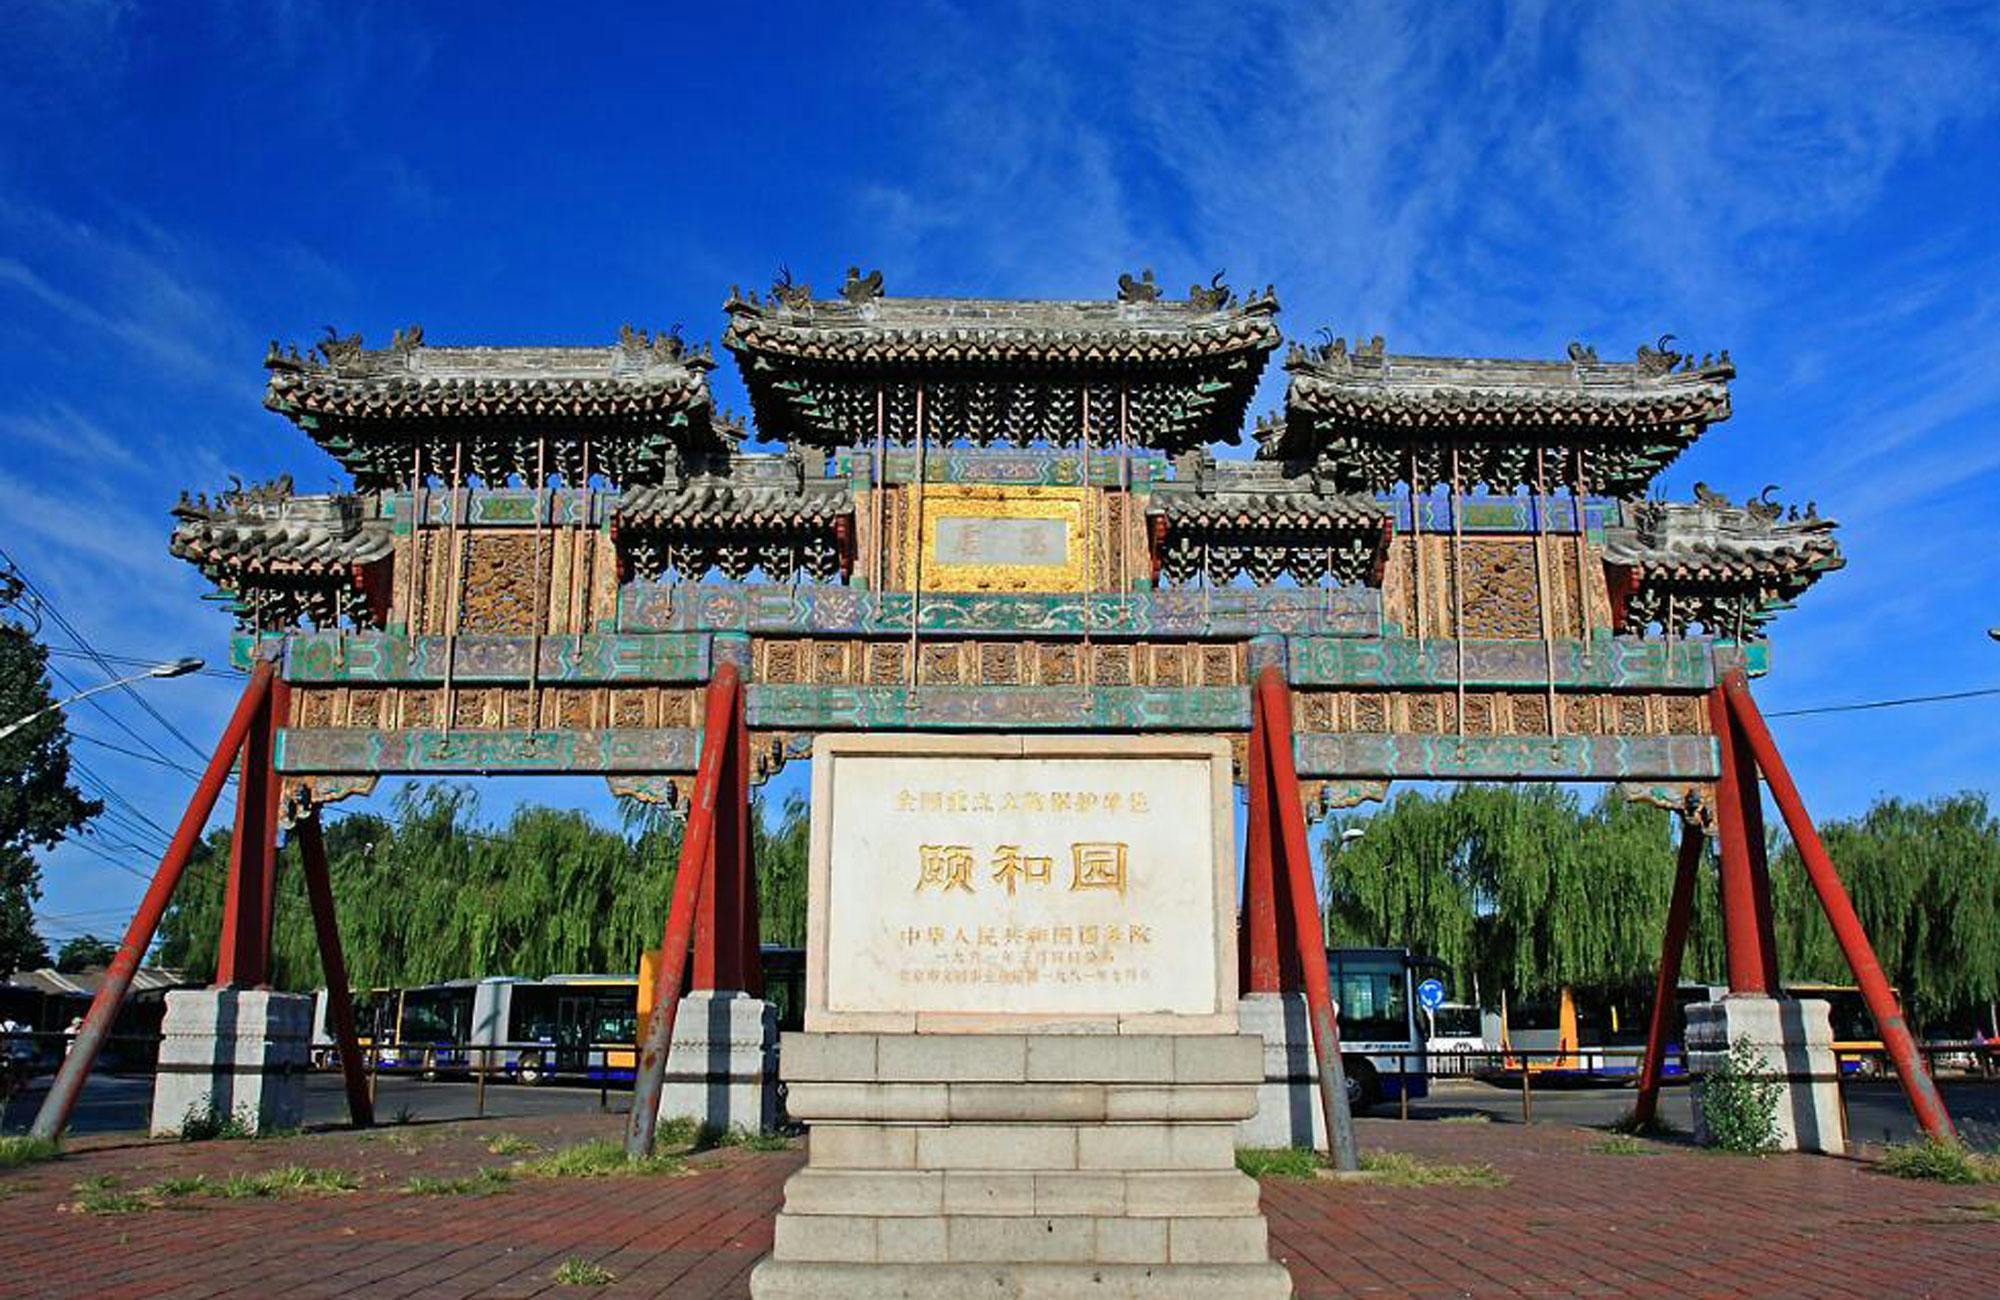 Privétour door Peking door de Chinese Muur en het Zomerpaleis van Mutianyu in Peking